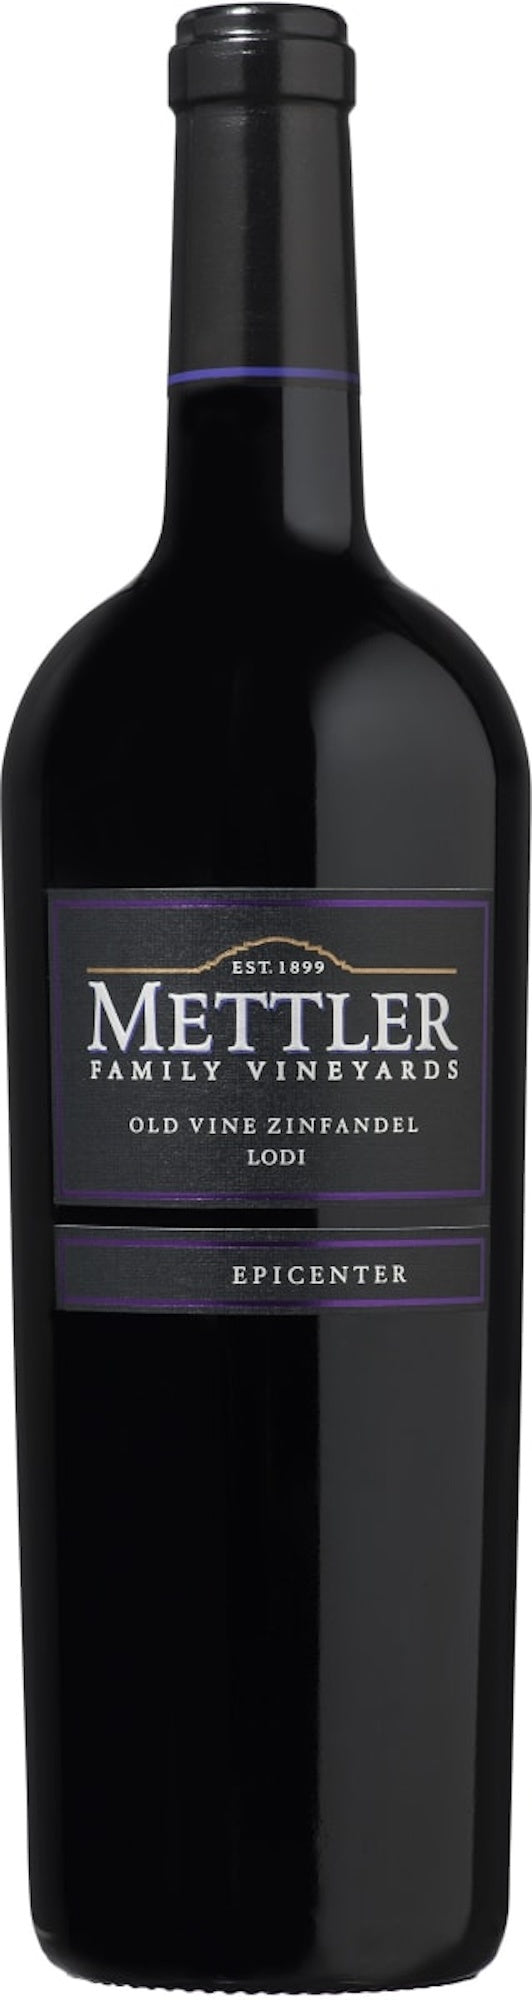 Mettler Family Vineyards Epicenter Old Vine Zinfandel 2020